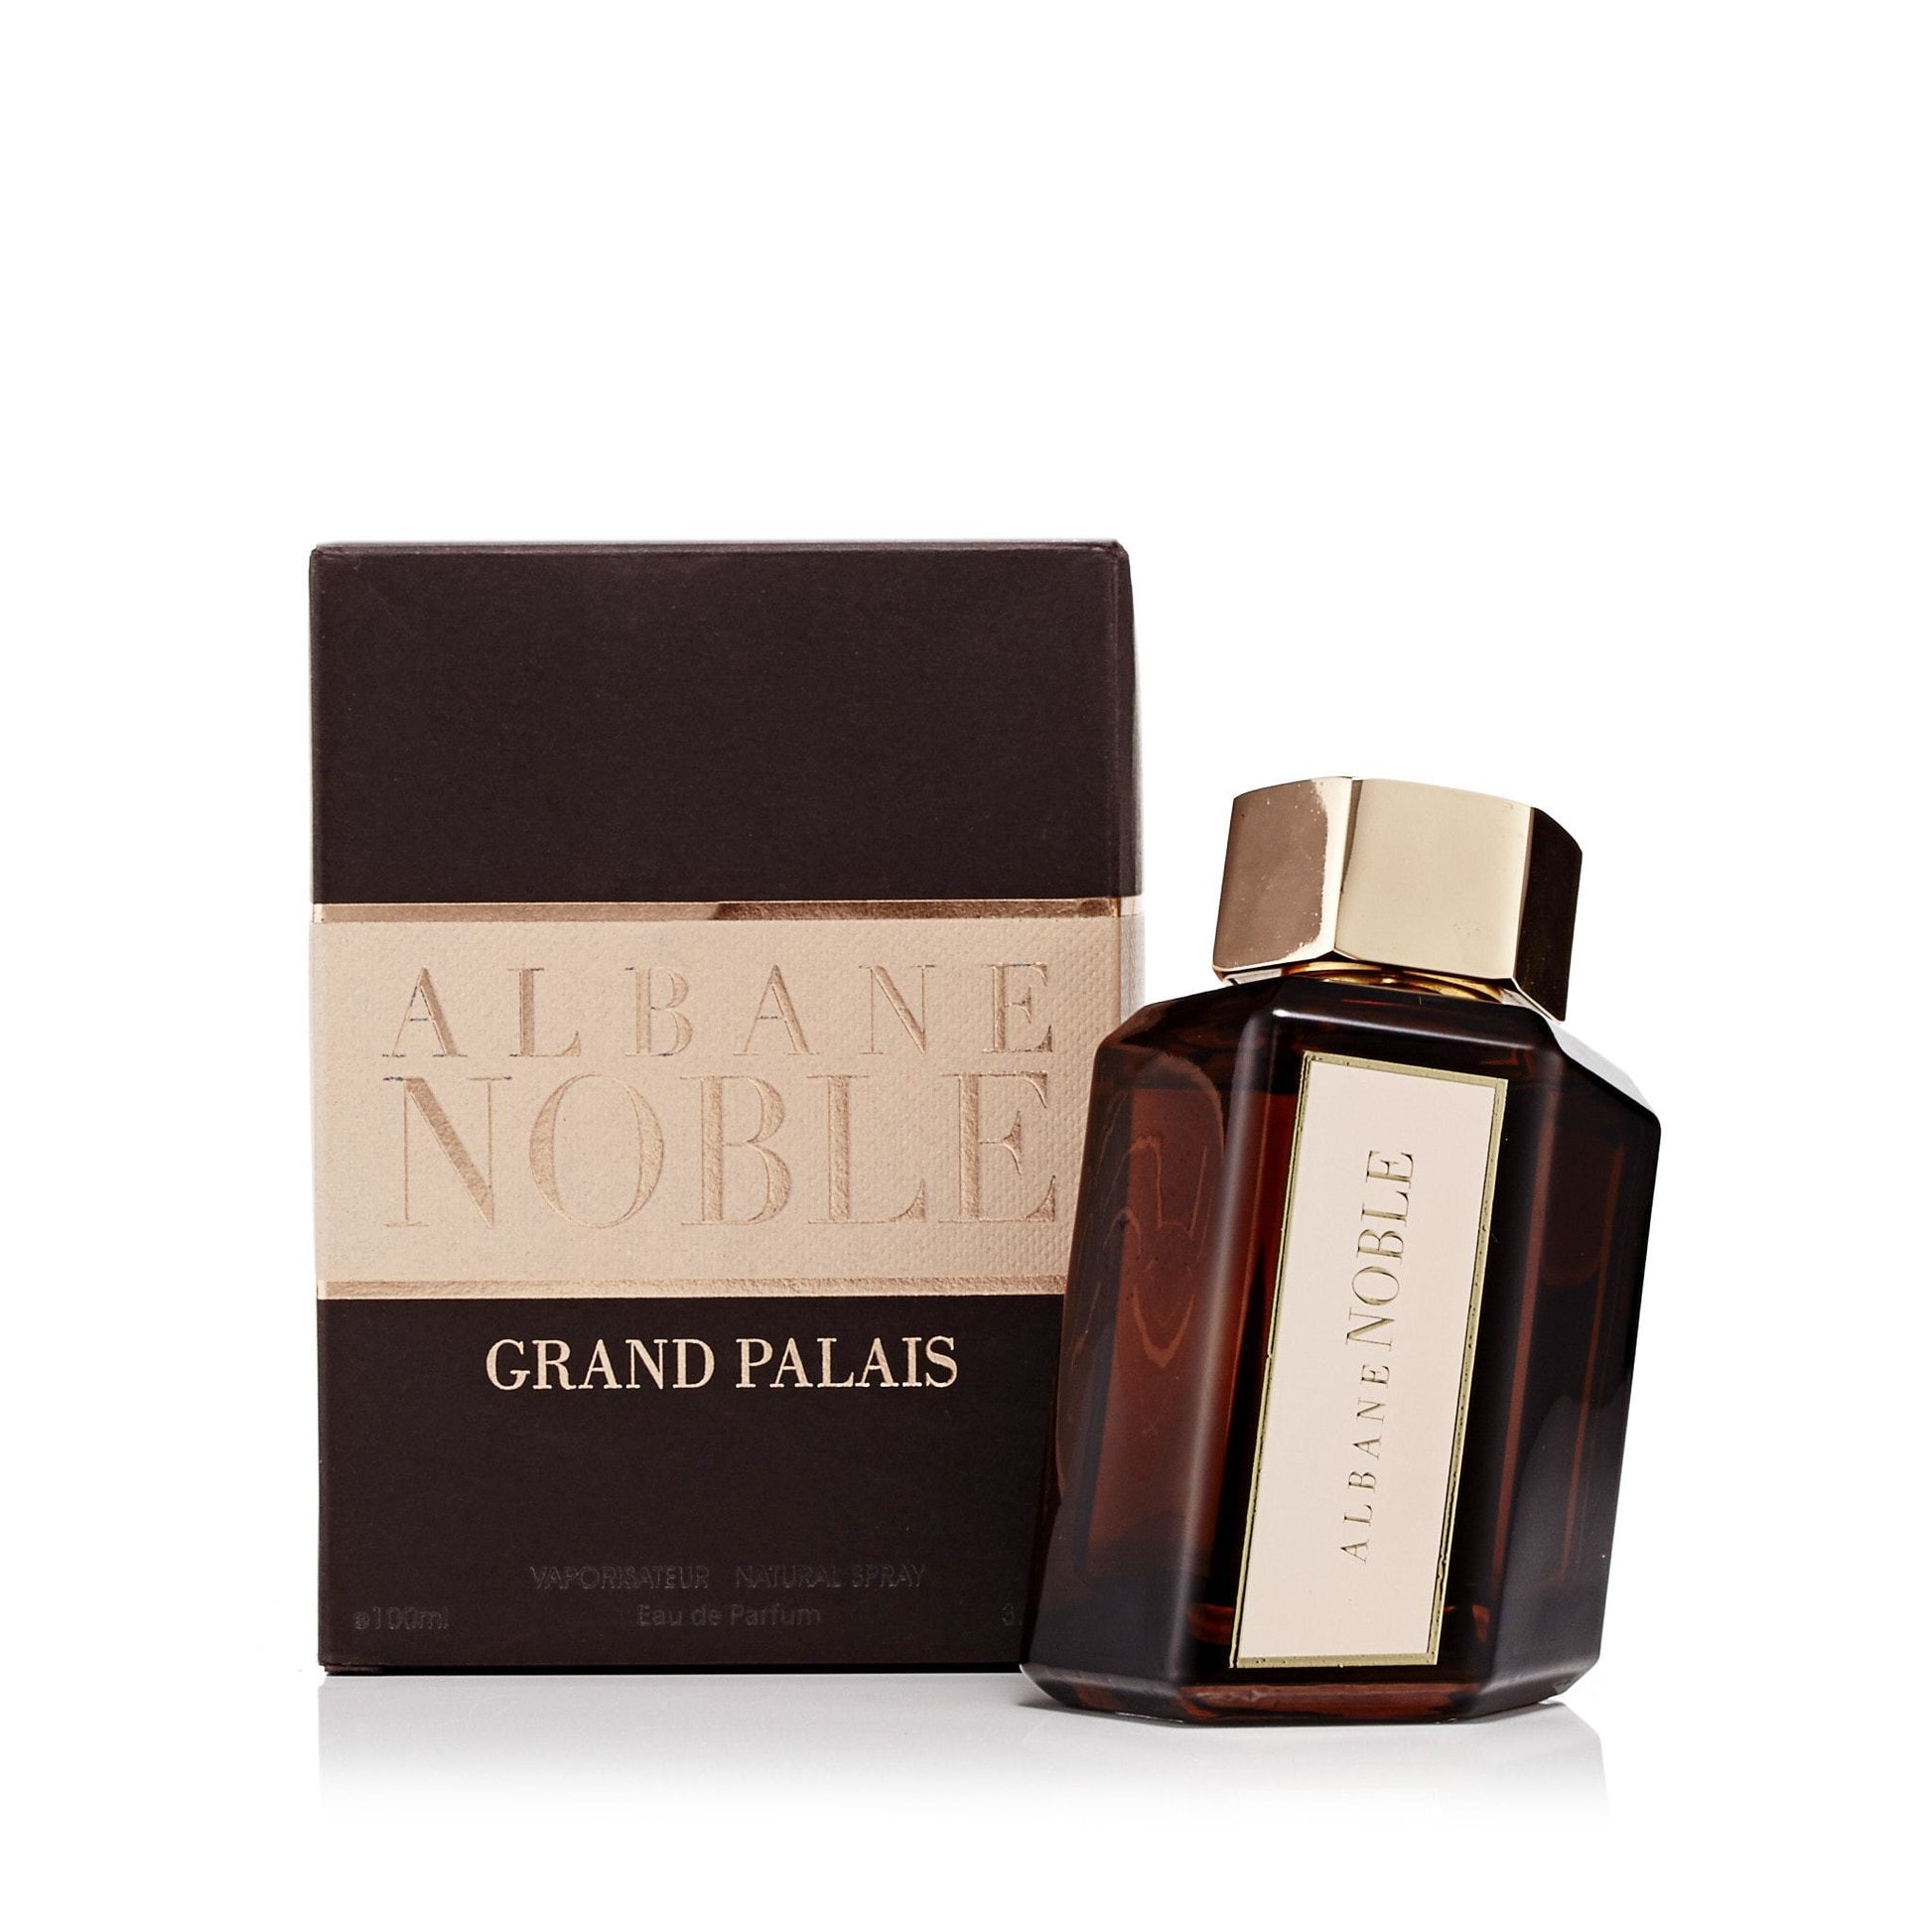 Gran Palais Eau de Parfum Spray for Men by Albane Noble, Product image 2